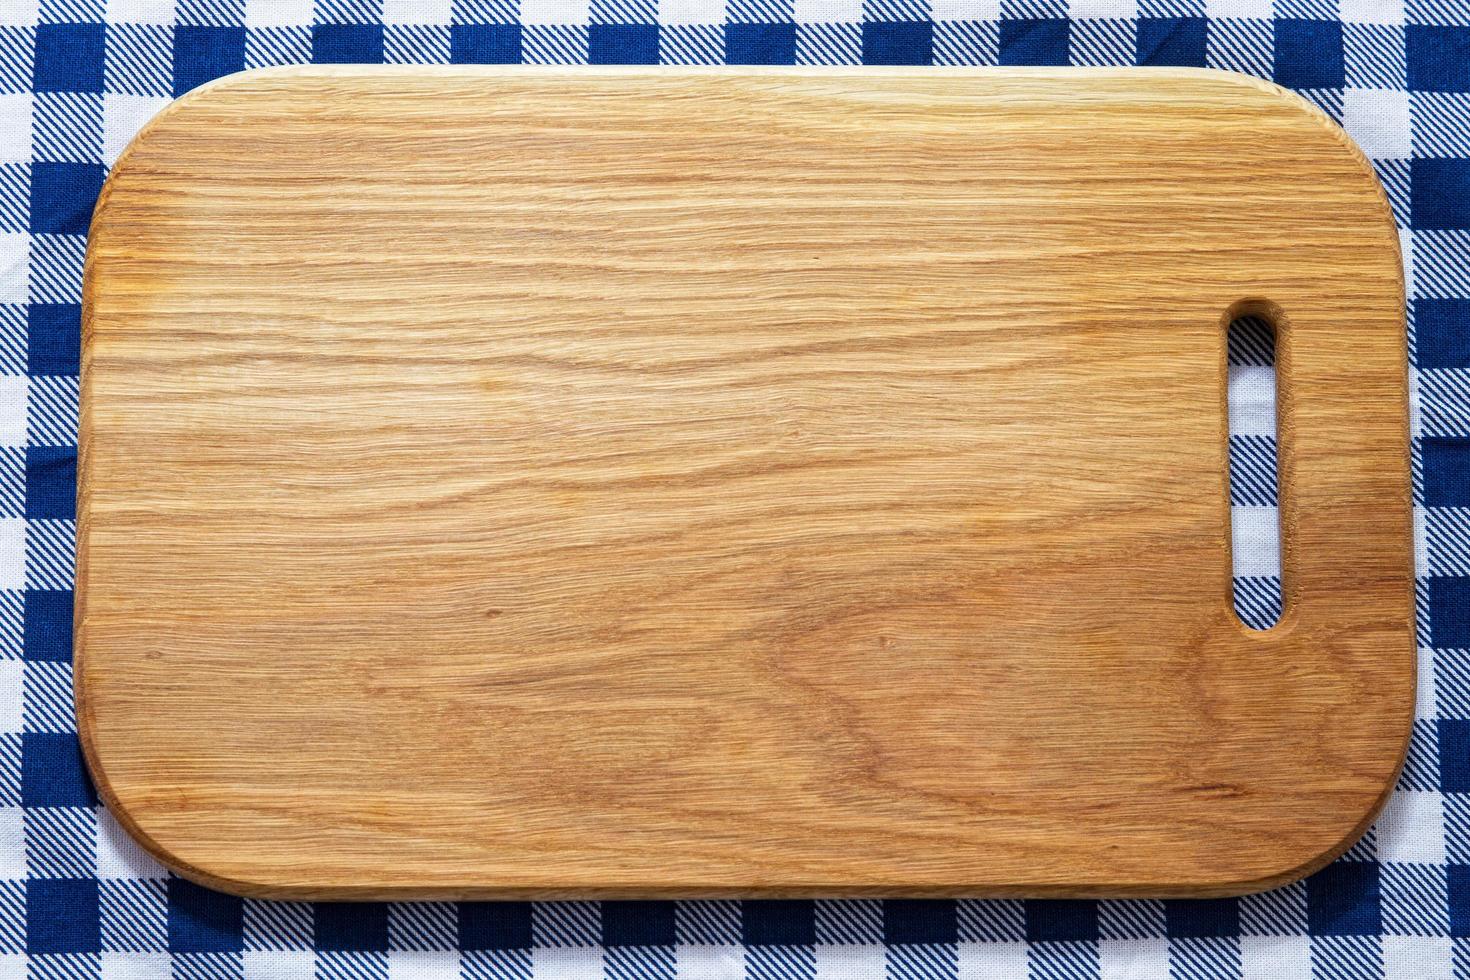 primer plano de la tabla de cortar de madera en la servilleta de mantel a cuadros foto